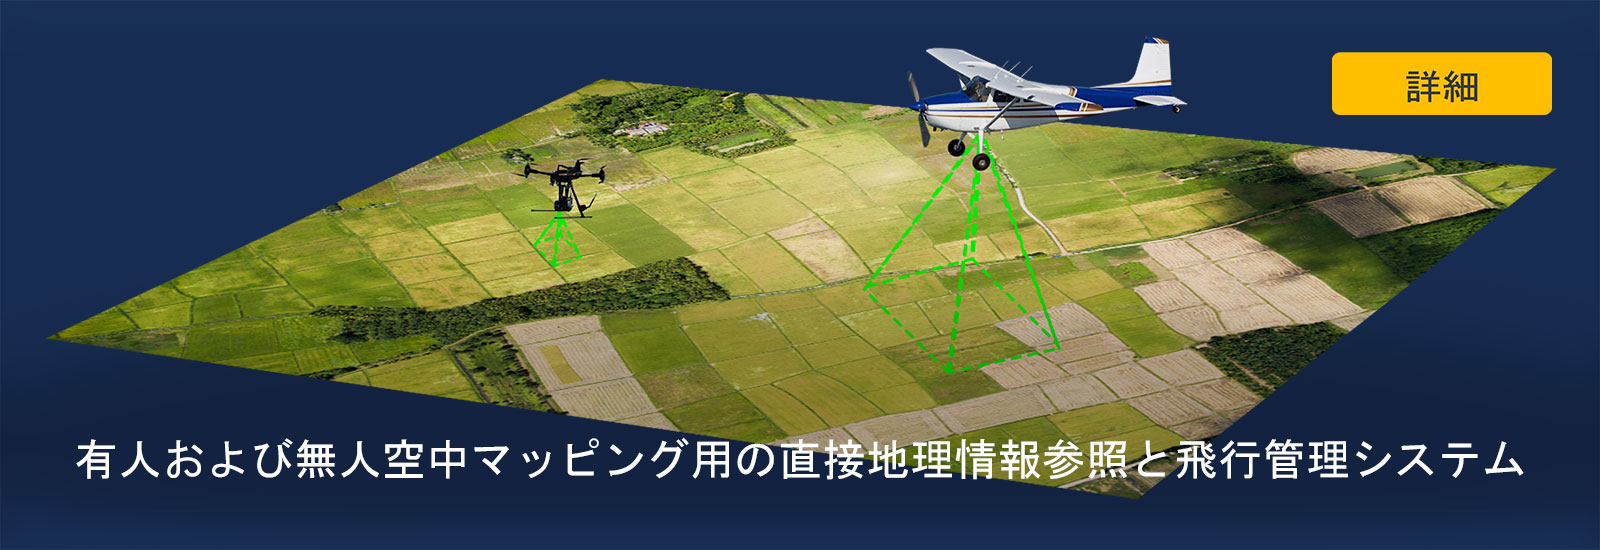 有人および無人空中マッピング用の直接地理情報参照と飛行管理システム